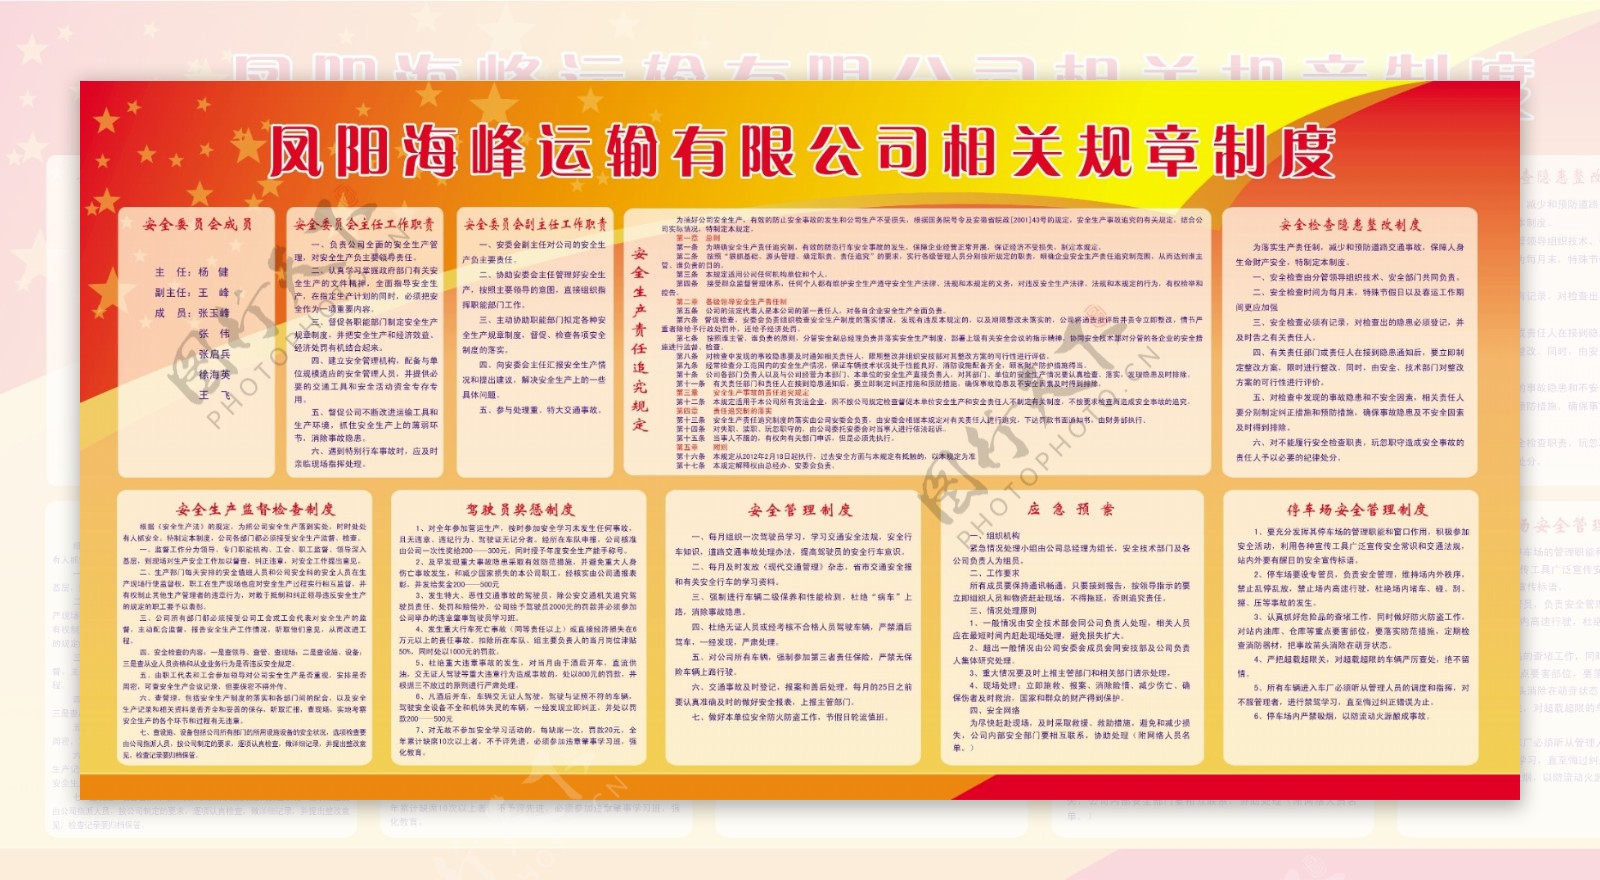 凤阳县海峰运输有限公司相关规章制度图片